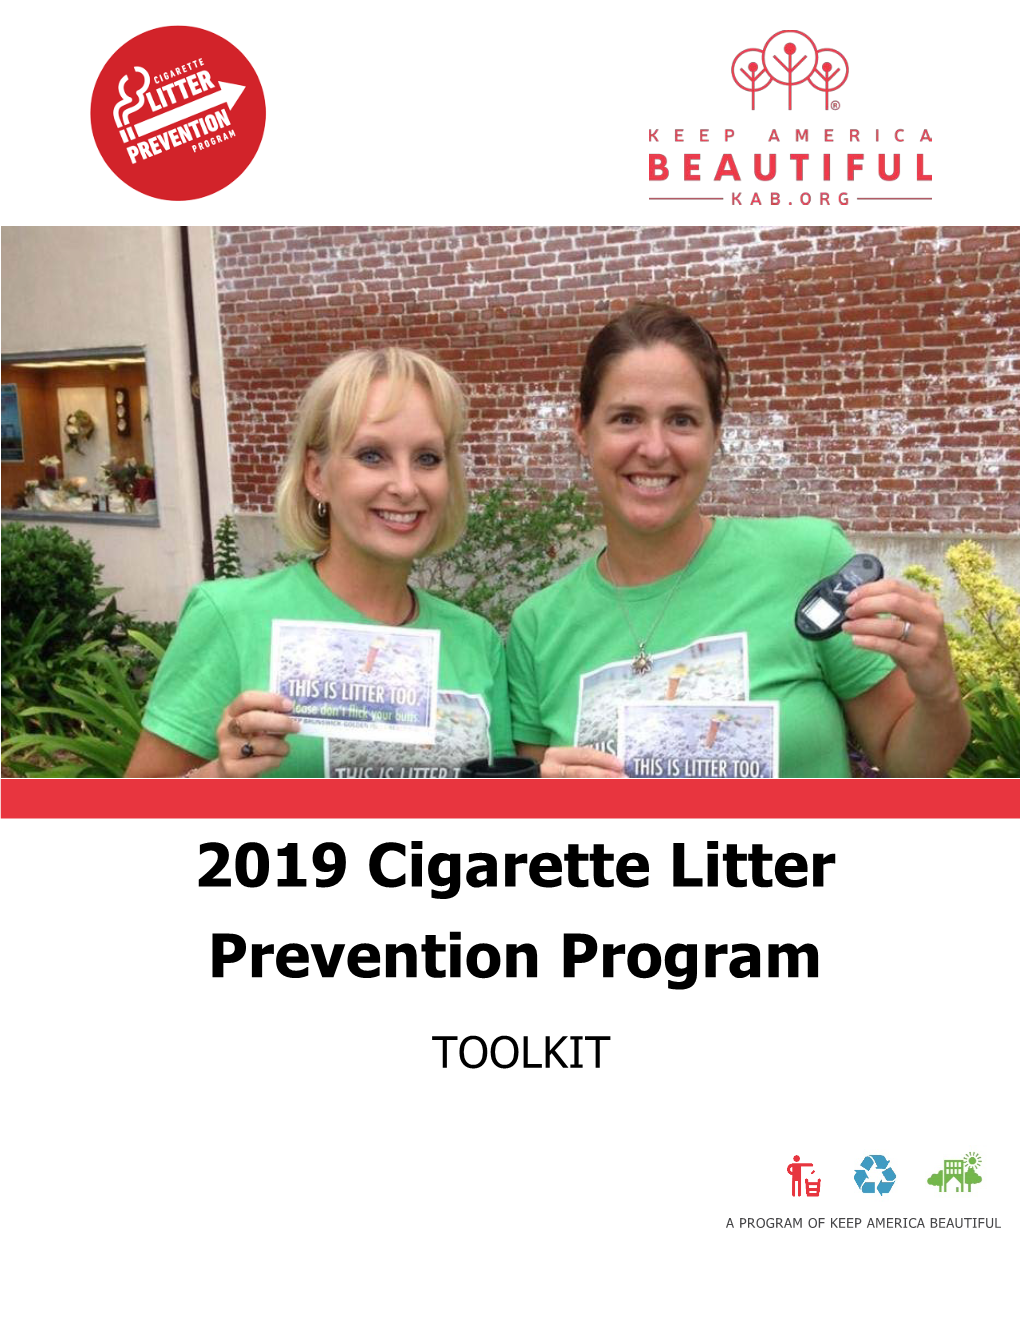 2019 Cigarette Litter Prevention Program Toolkit